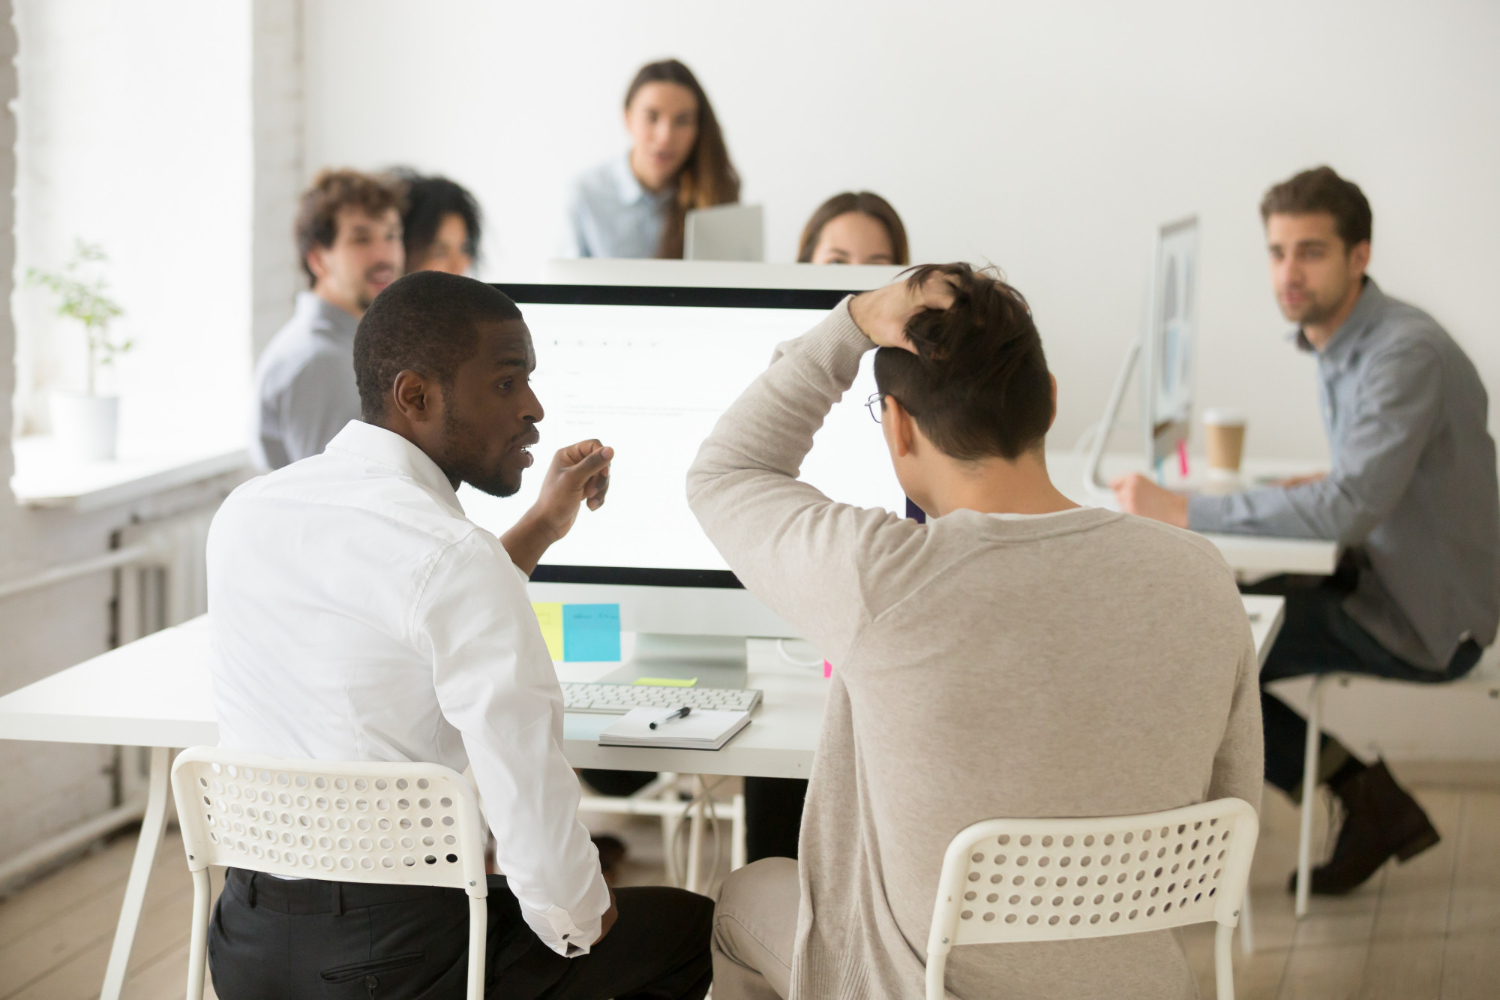 A imagem mostra em destaque algumas pessoas em torno de uma mesa de trabalho branco. No centro da foto, há um homem negro de costas, que olha para um homem branco que está ao seu lado, também de costas. Os dois parecem solucionar um problema no computador. 